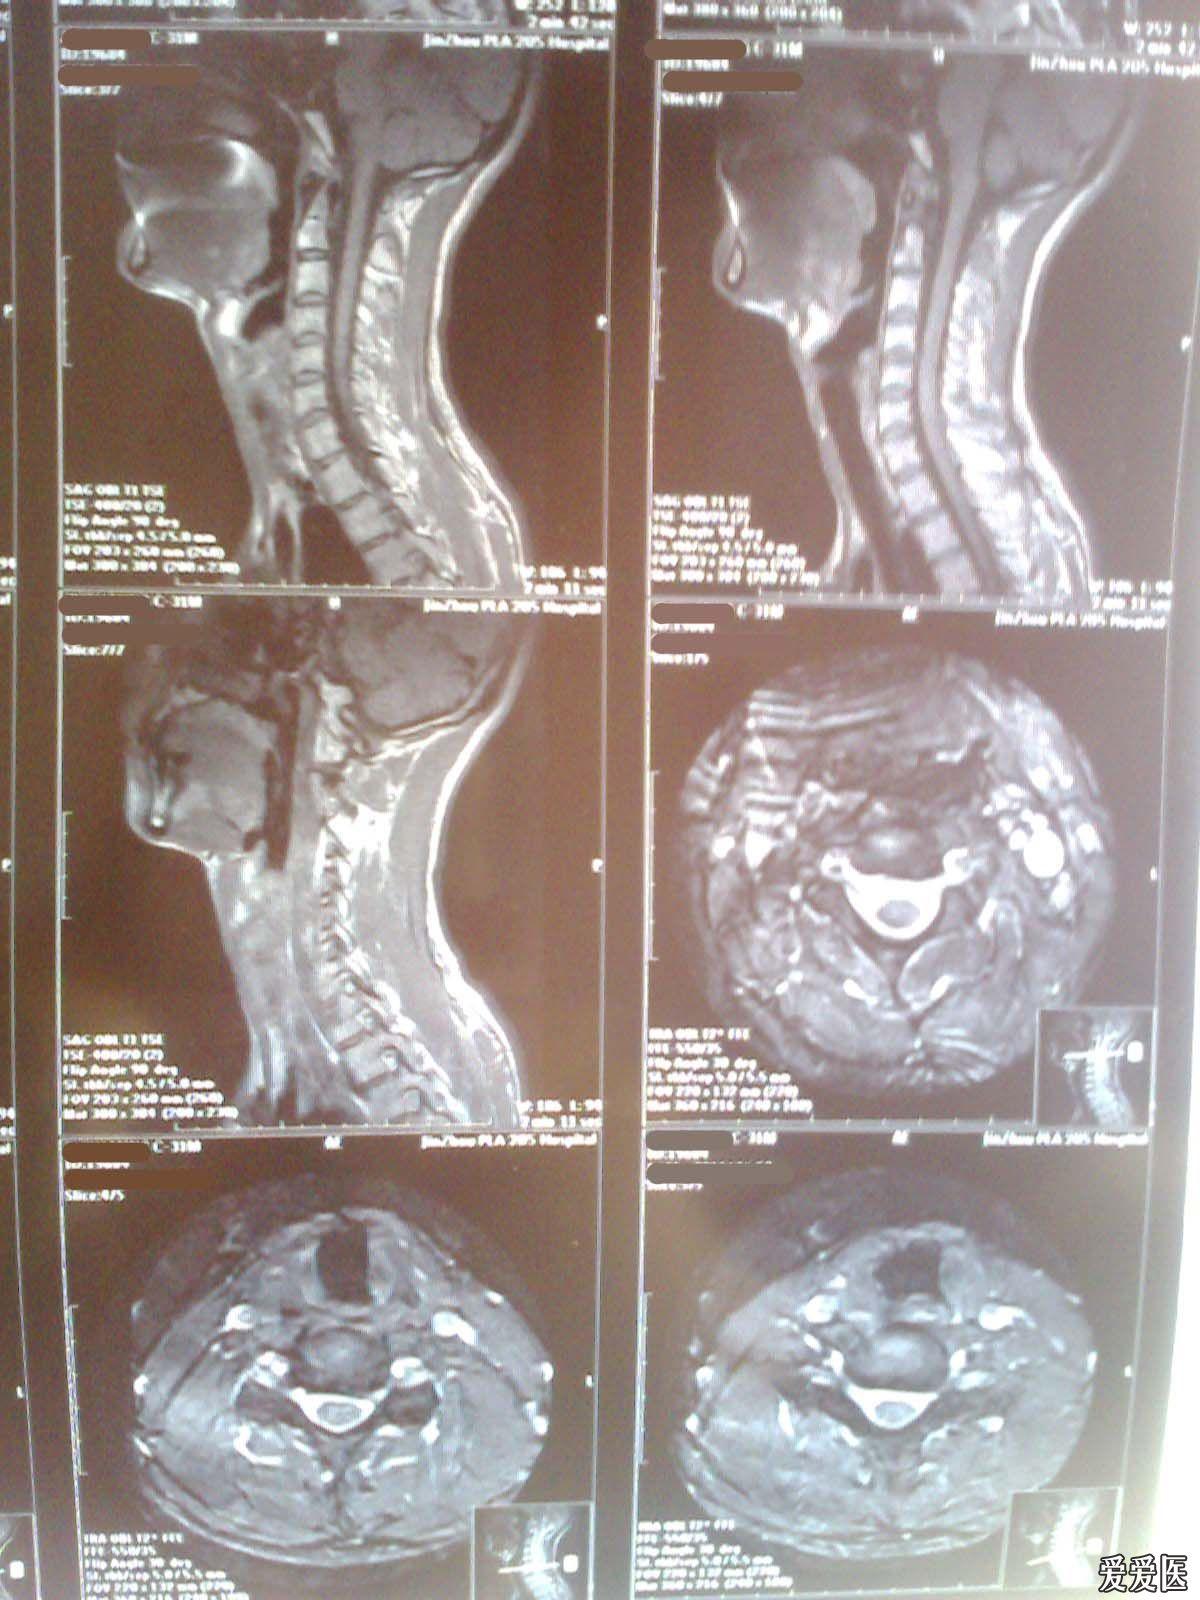 请医生看一下颈椎ct片和核磁片,确诊一下这是什么病,应该如何治疗?